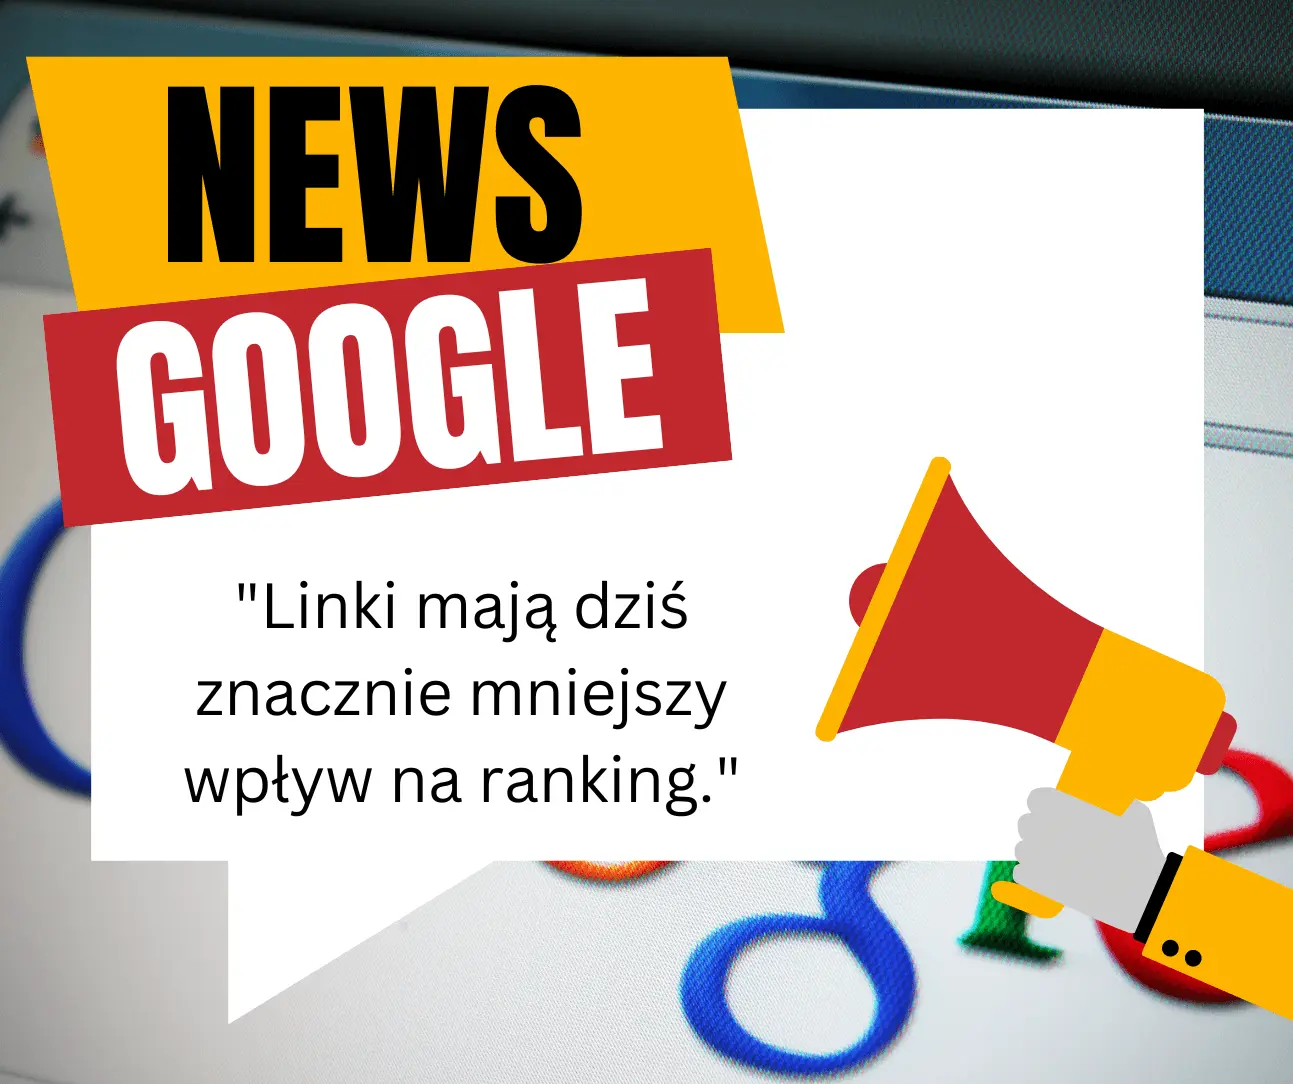 Google: Linki mają dziś znacznie mniejszy wpływ na ranking